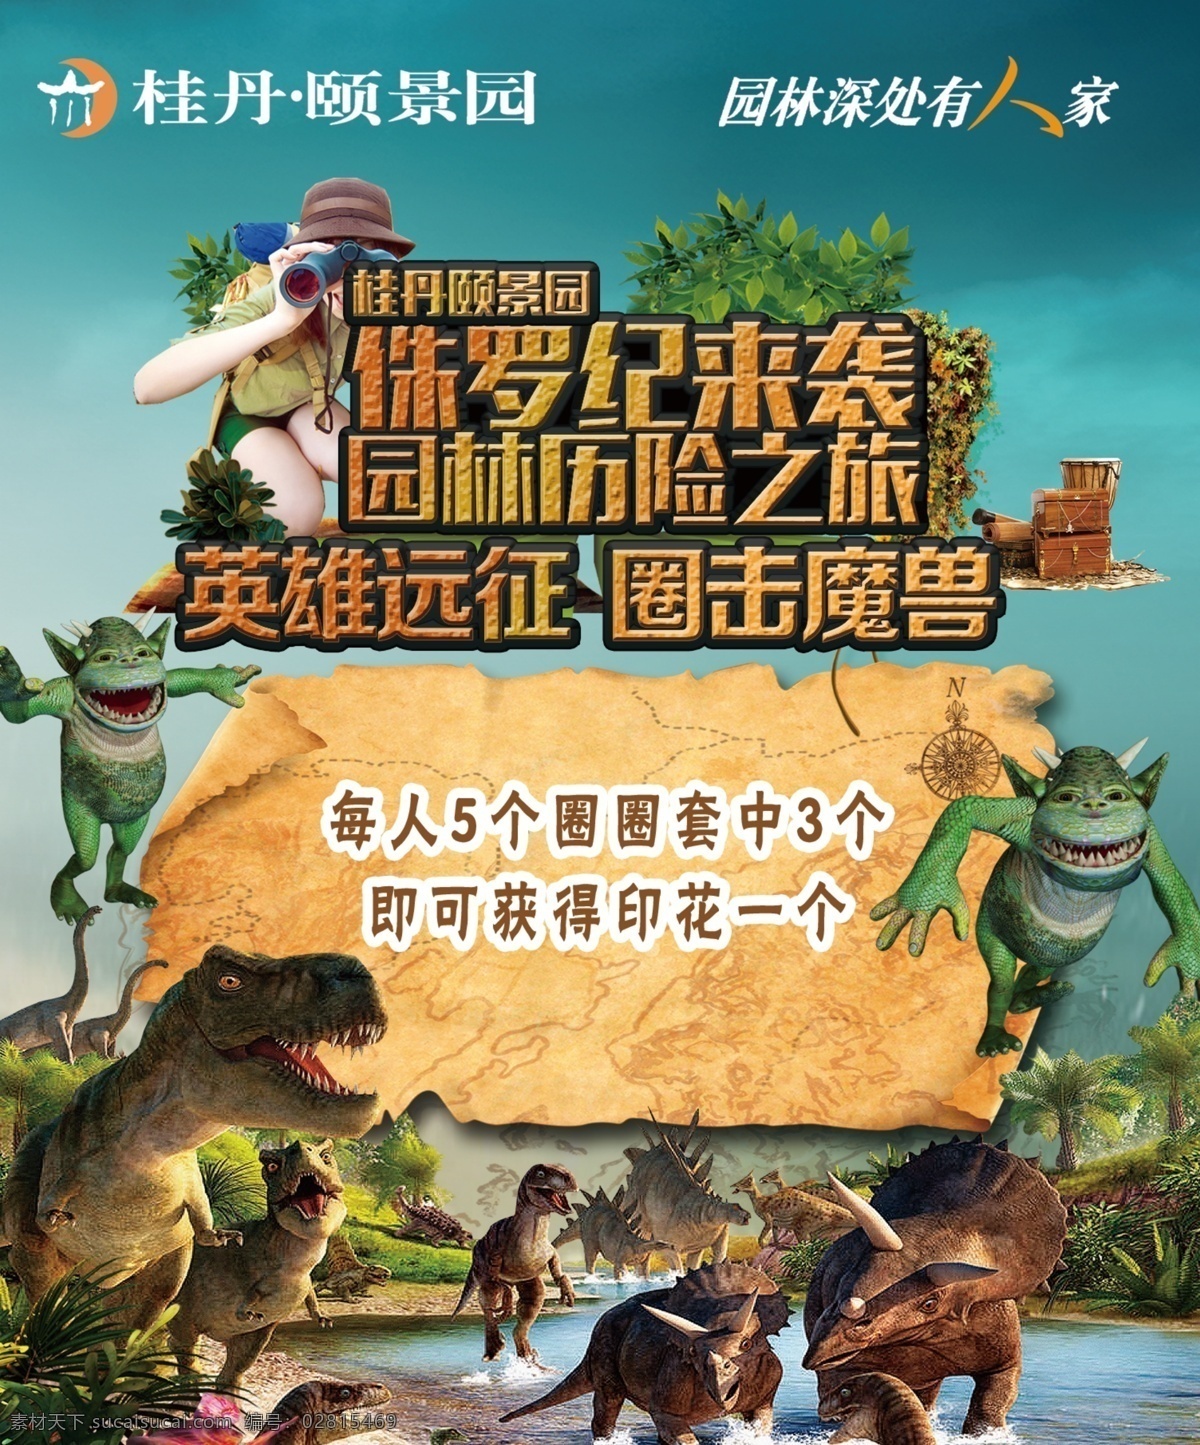 侏罗纪之旅 侏罗纪 恐龙 游戏 英雄 原始森林 恐龙世界 寻宝 探险游戏 黑色